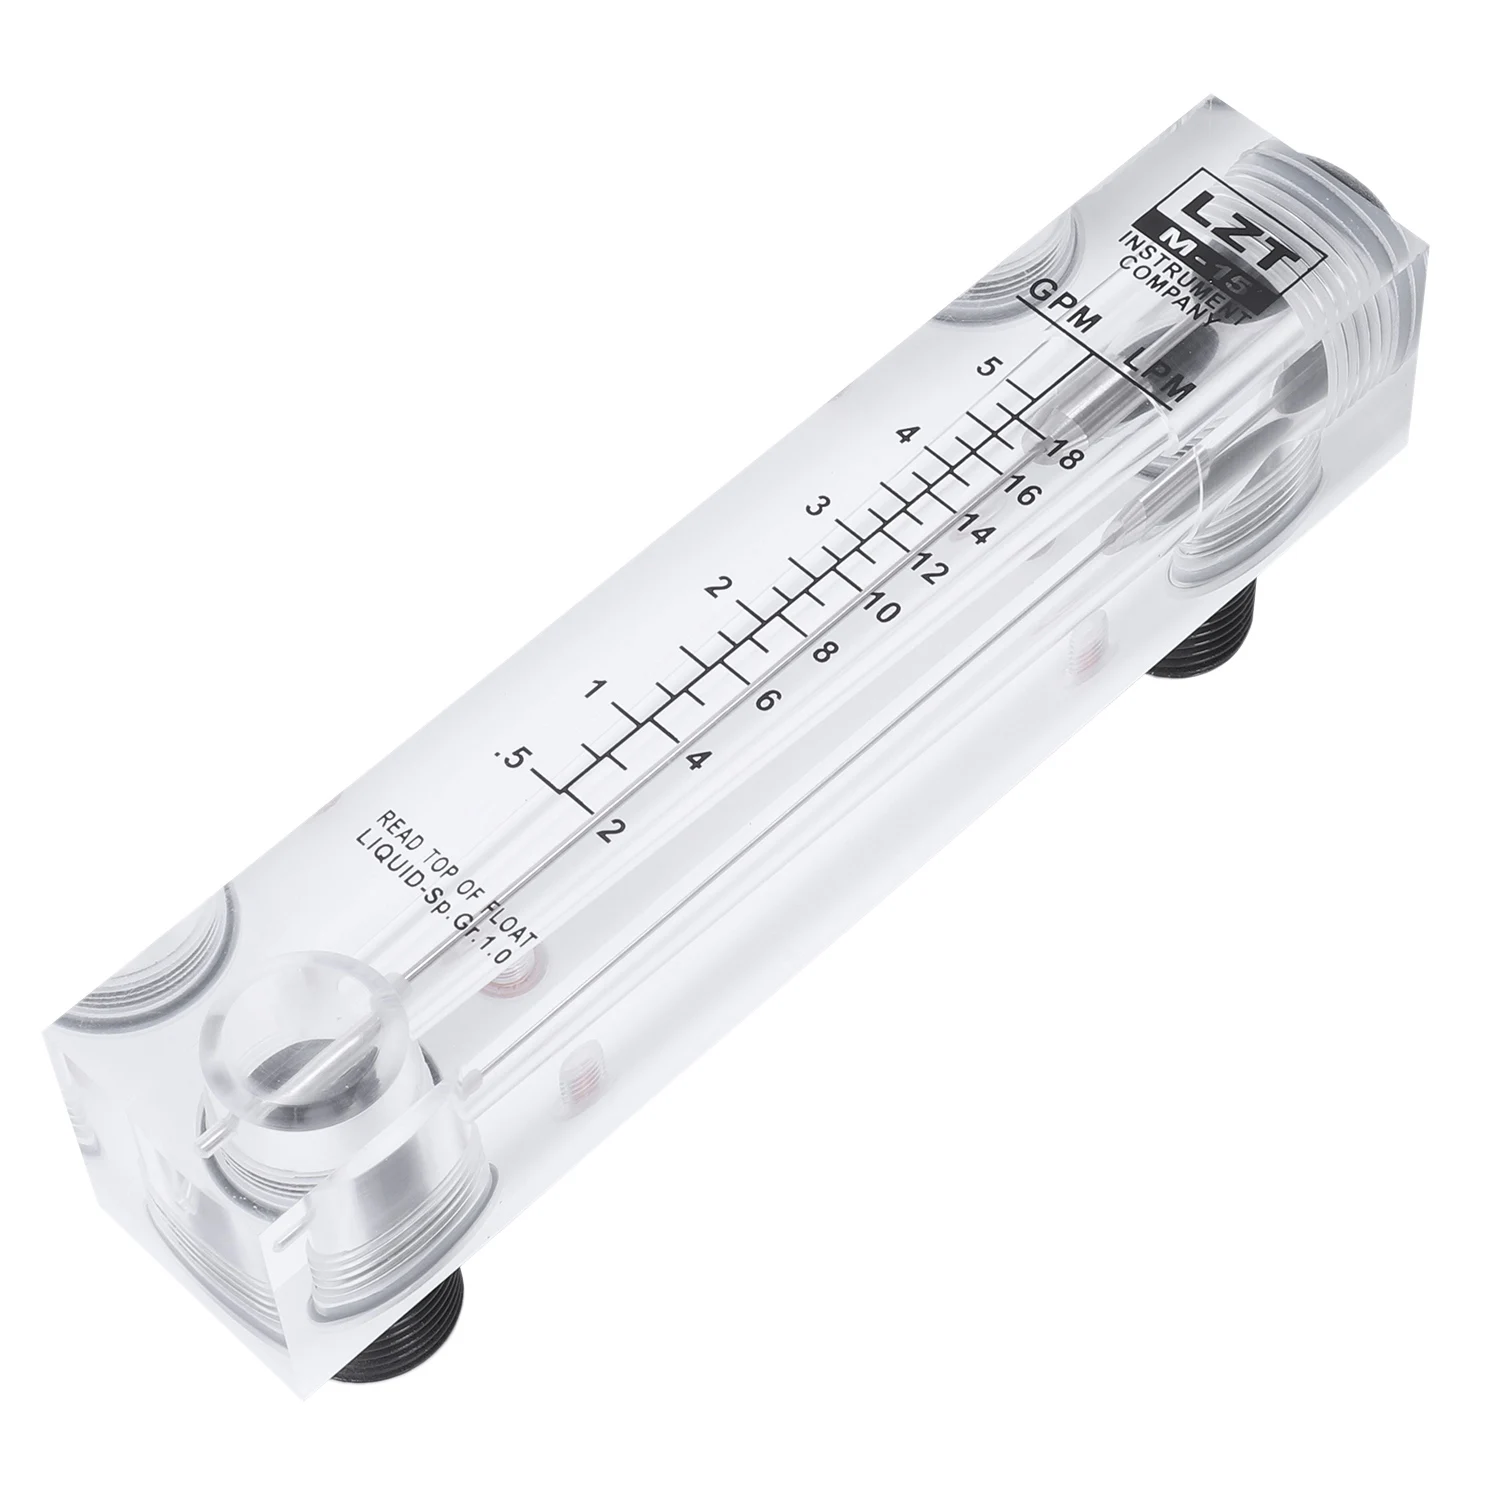 Разходомер с прикрепен към панела за измерване на разхода на вода 0,5-5 GPM 2-18 LPM